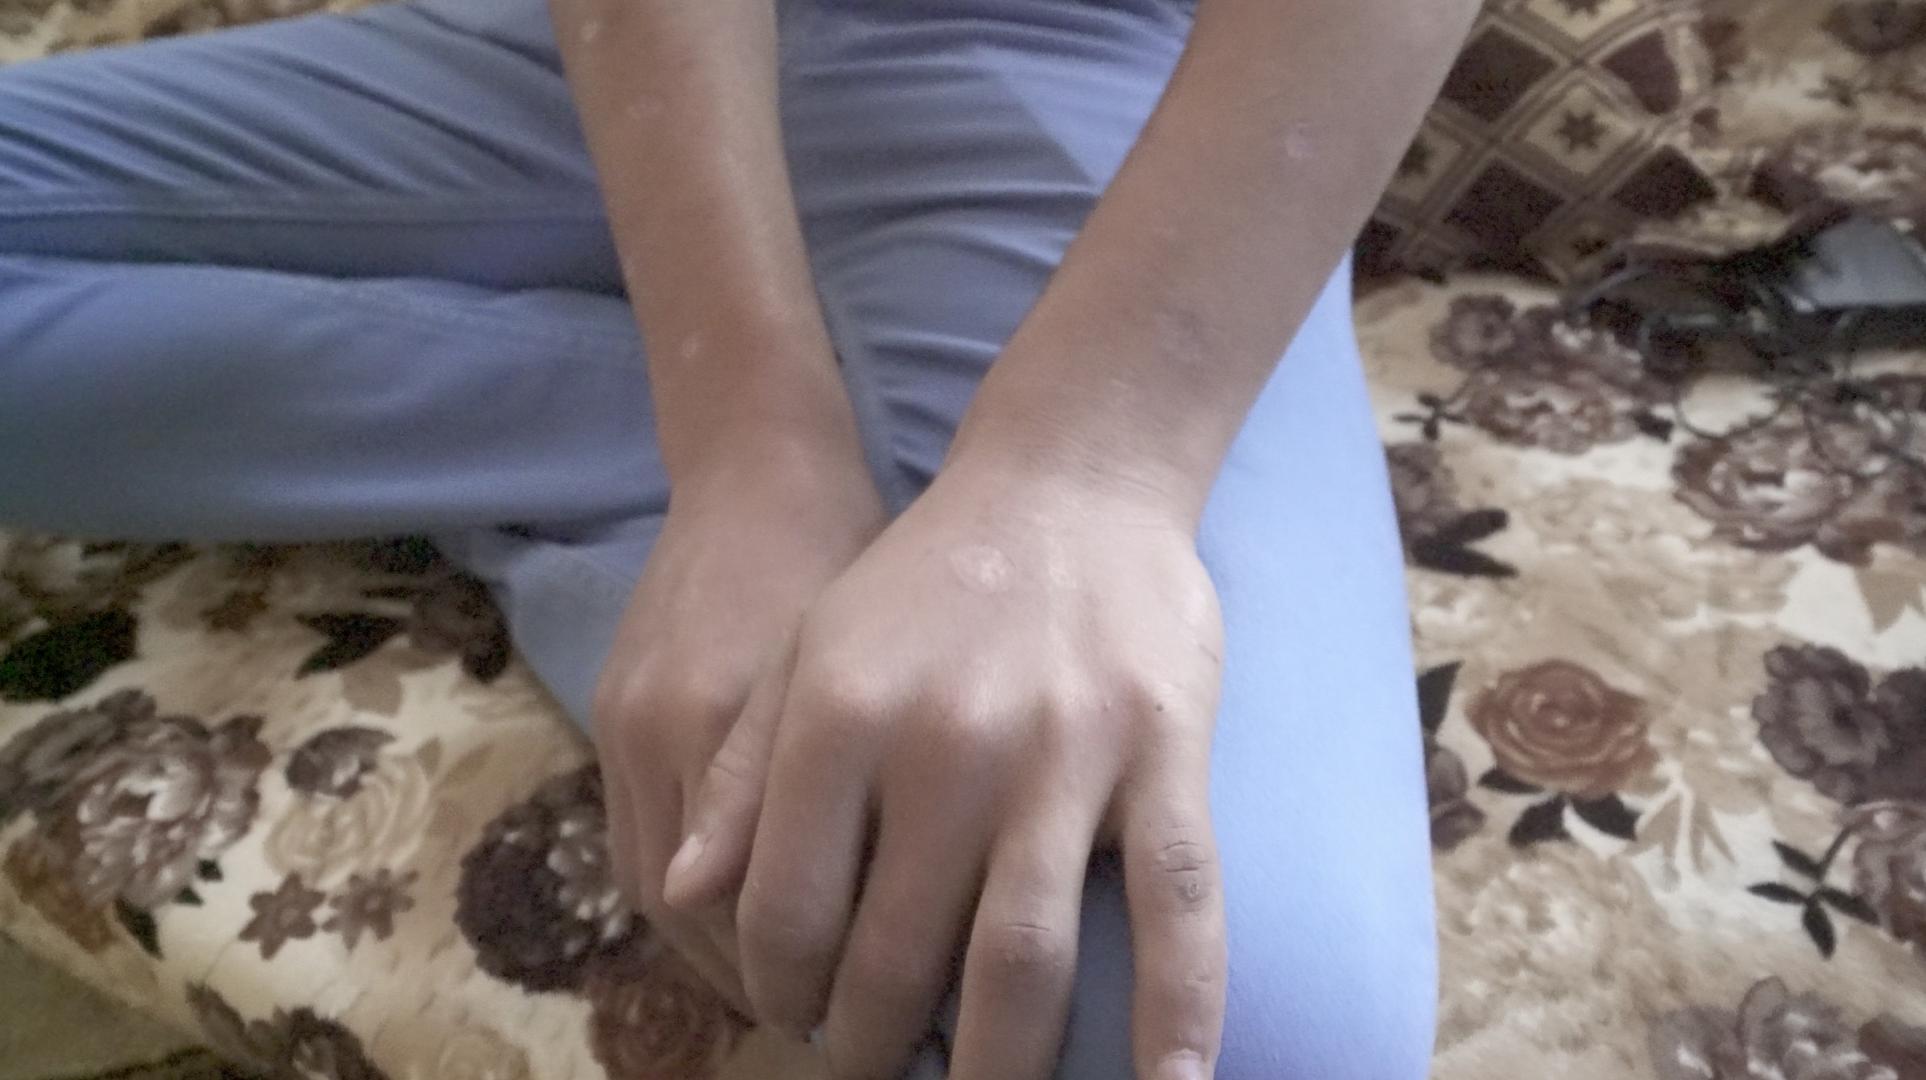 حروق السجائر تغطي يدي وذراعي كريم(18 عاما) الذي احتجزته السلطات الكردية لمدة 13 شهراً. عاد بعد إطلاق سراحه إلى منزله ليتم اعتقاله مجدداً من السلطات التابعة لبغداد التي عذبته واحتجزته لأشهر. @2018 سان سرافان